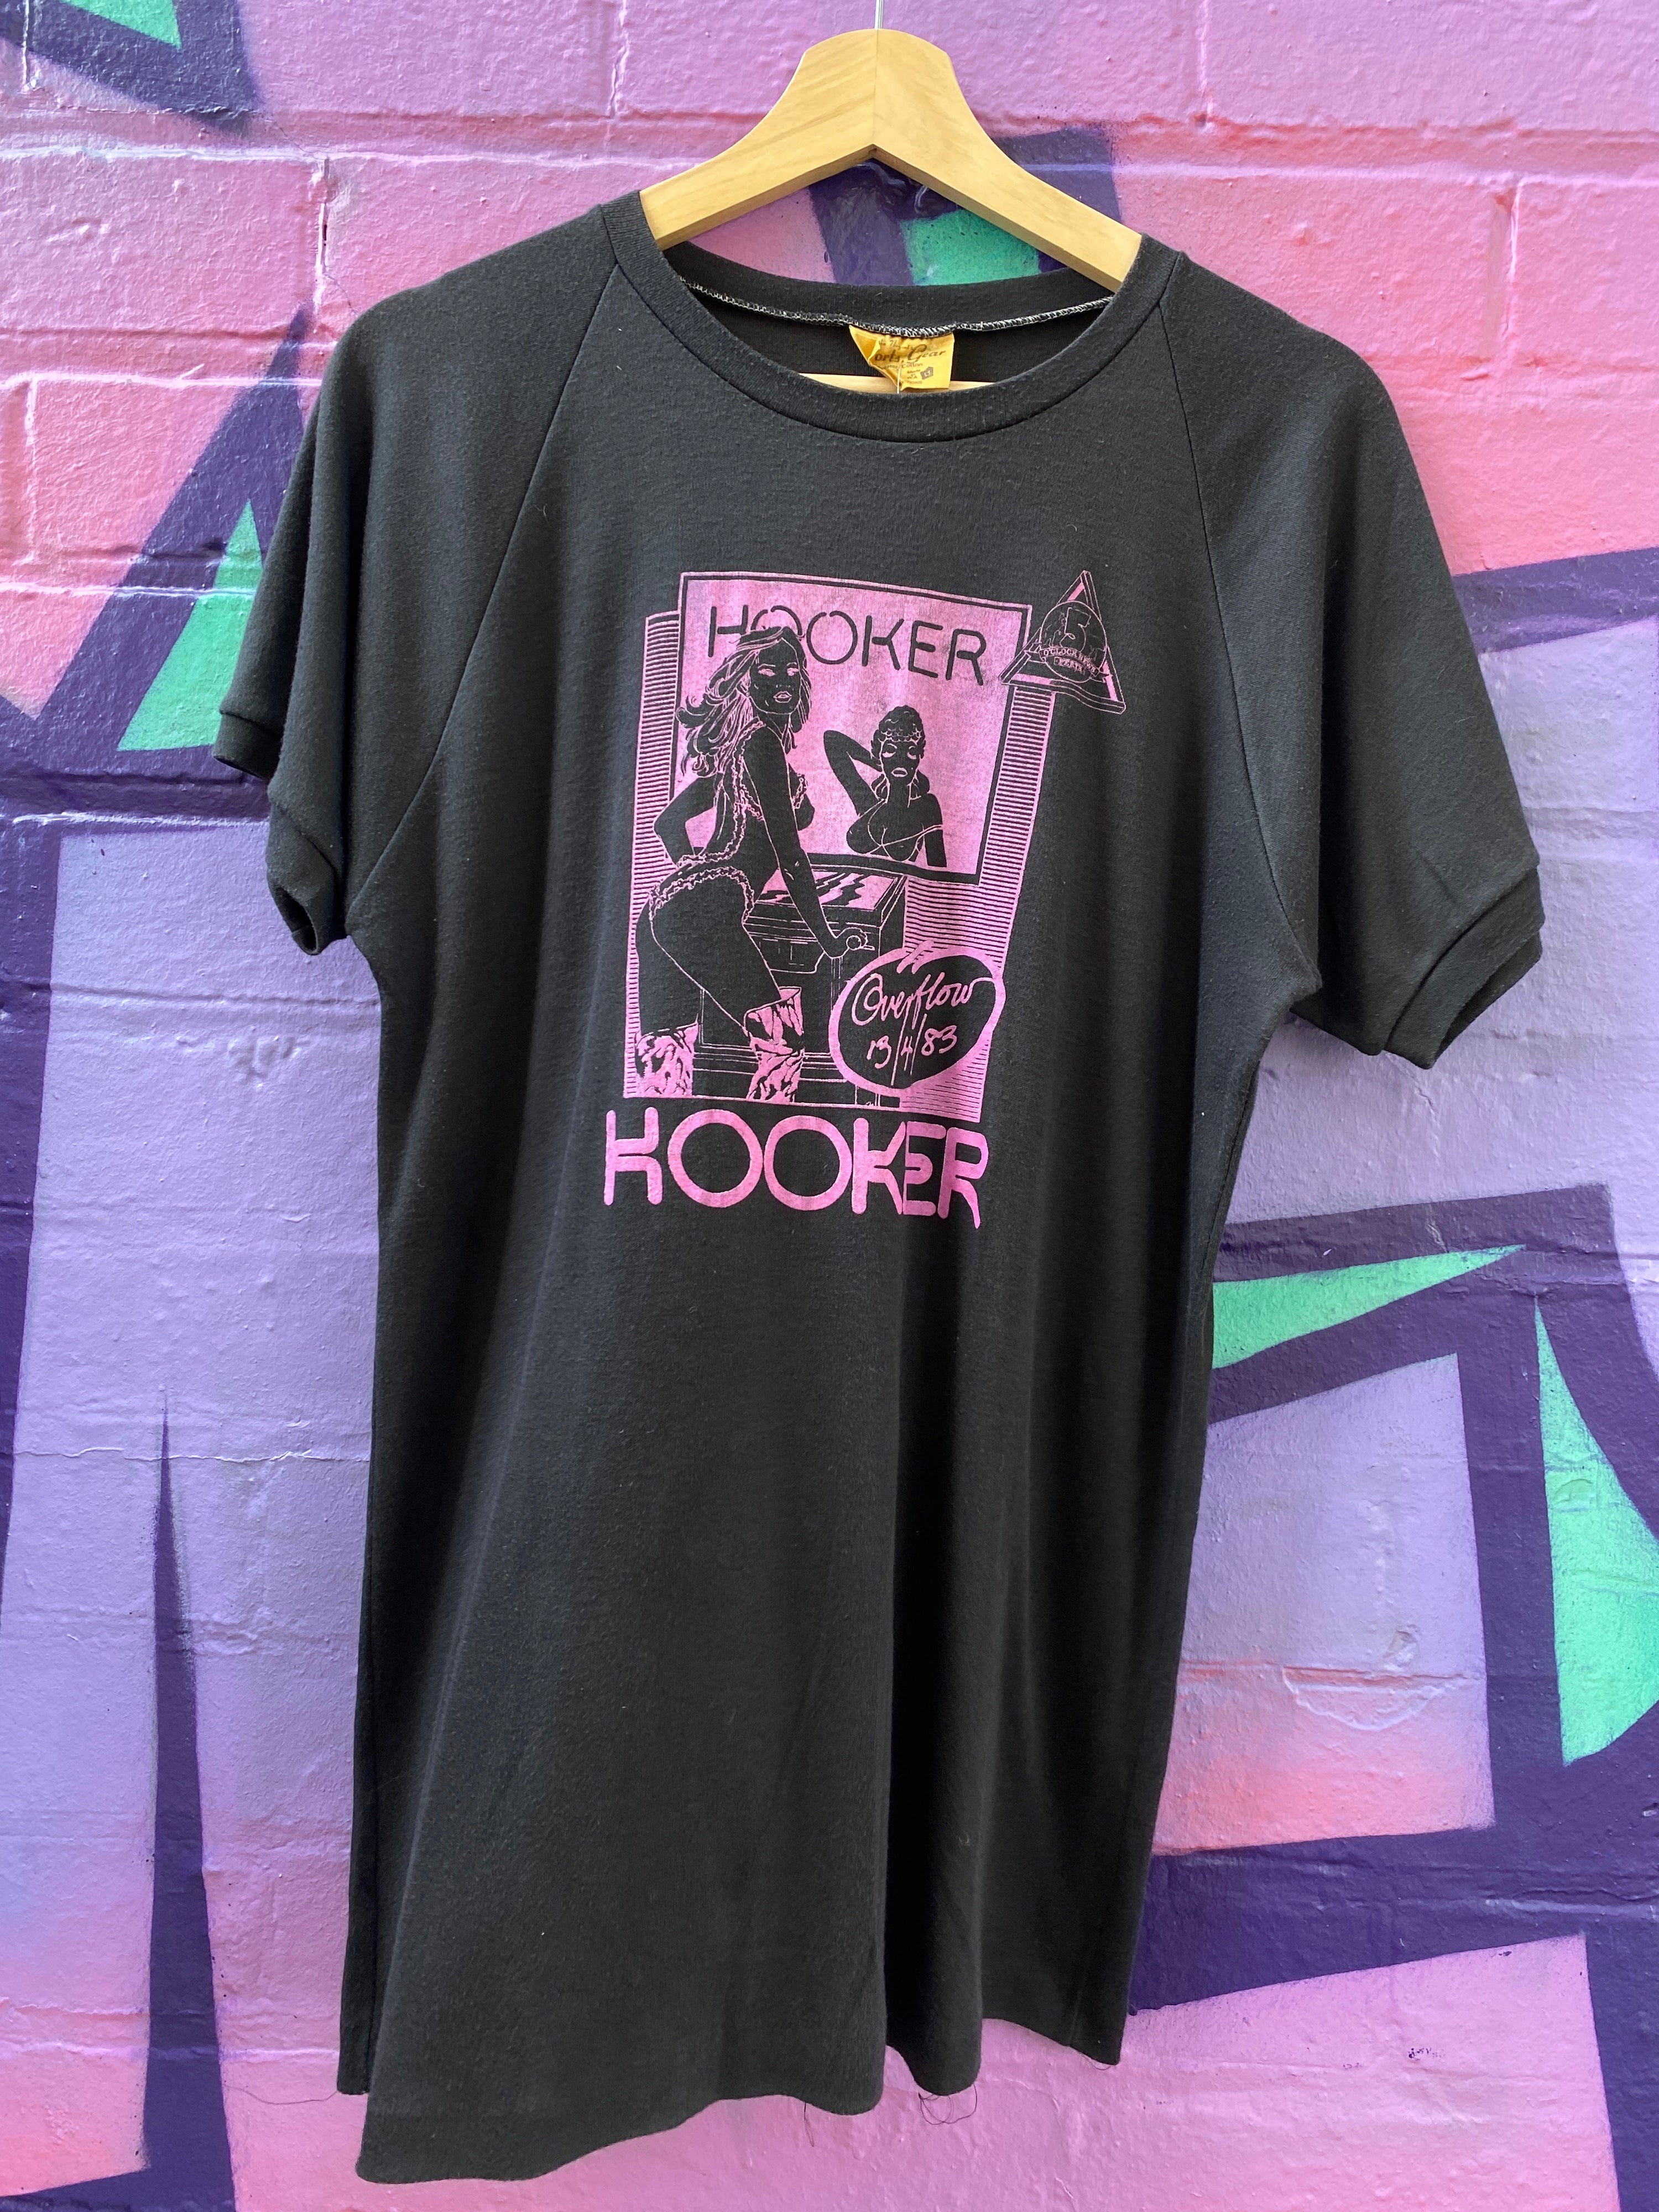 S - Hooker 1983 Overflow Reunion Tour